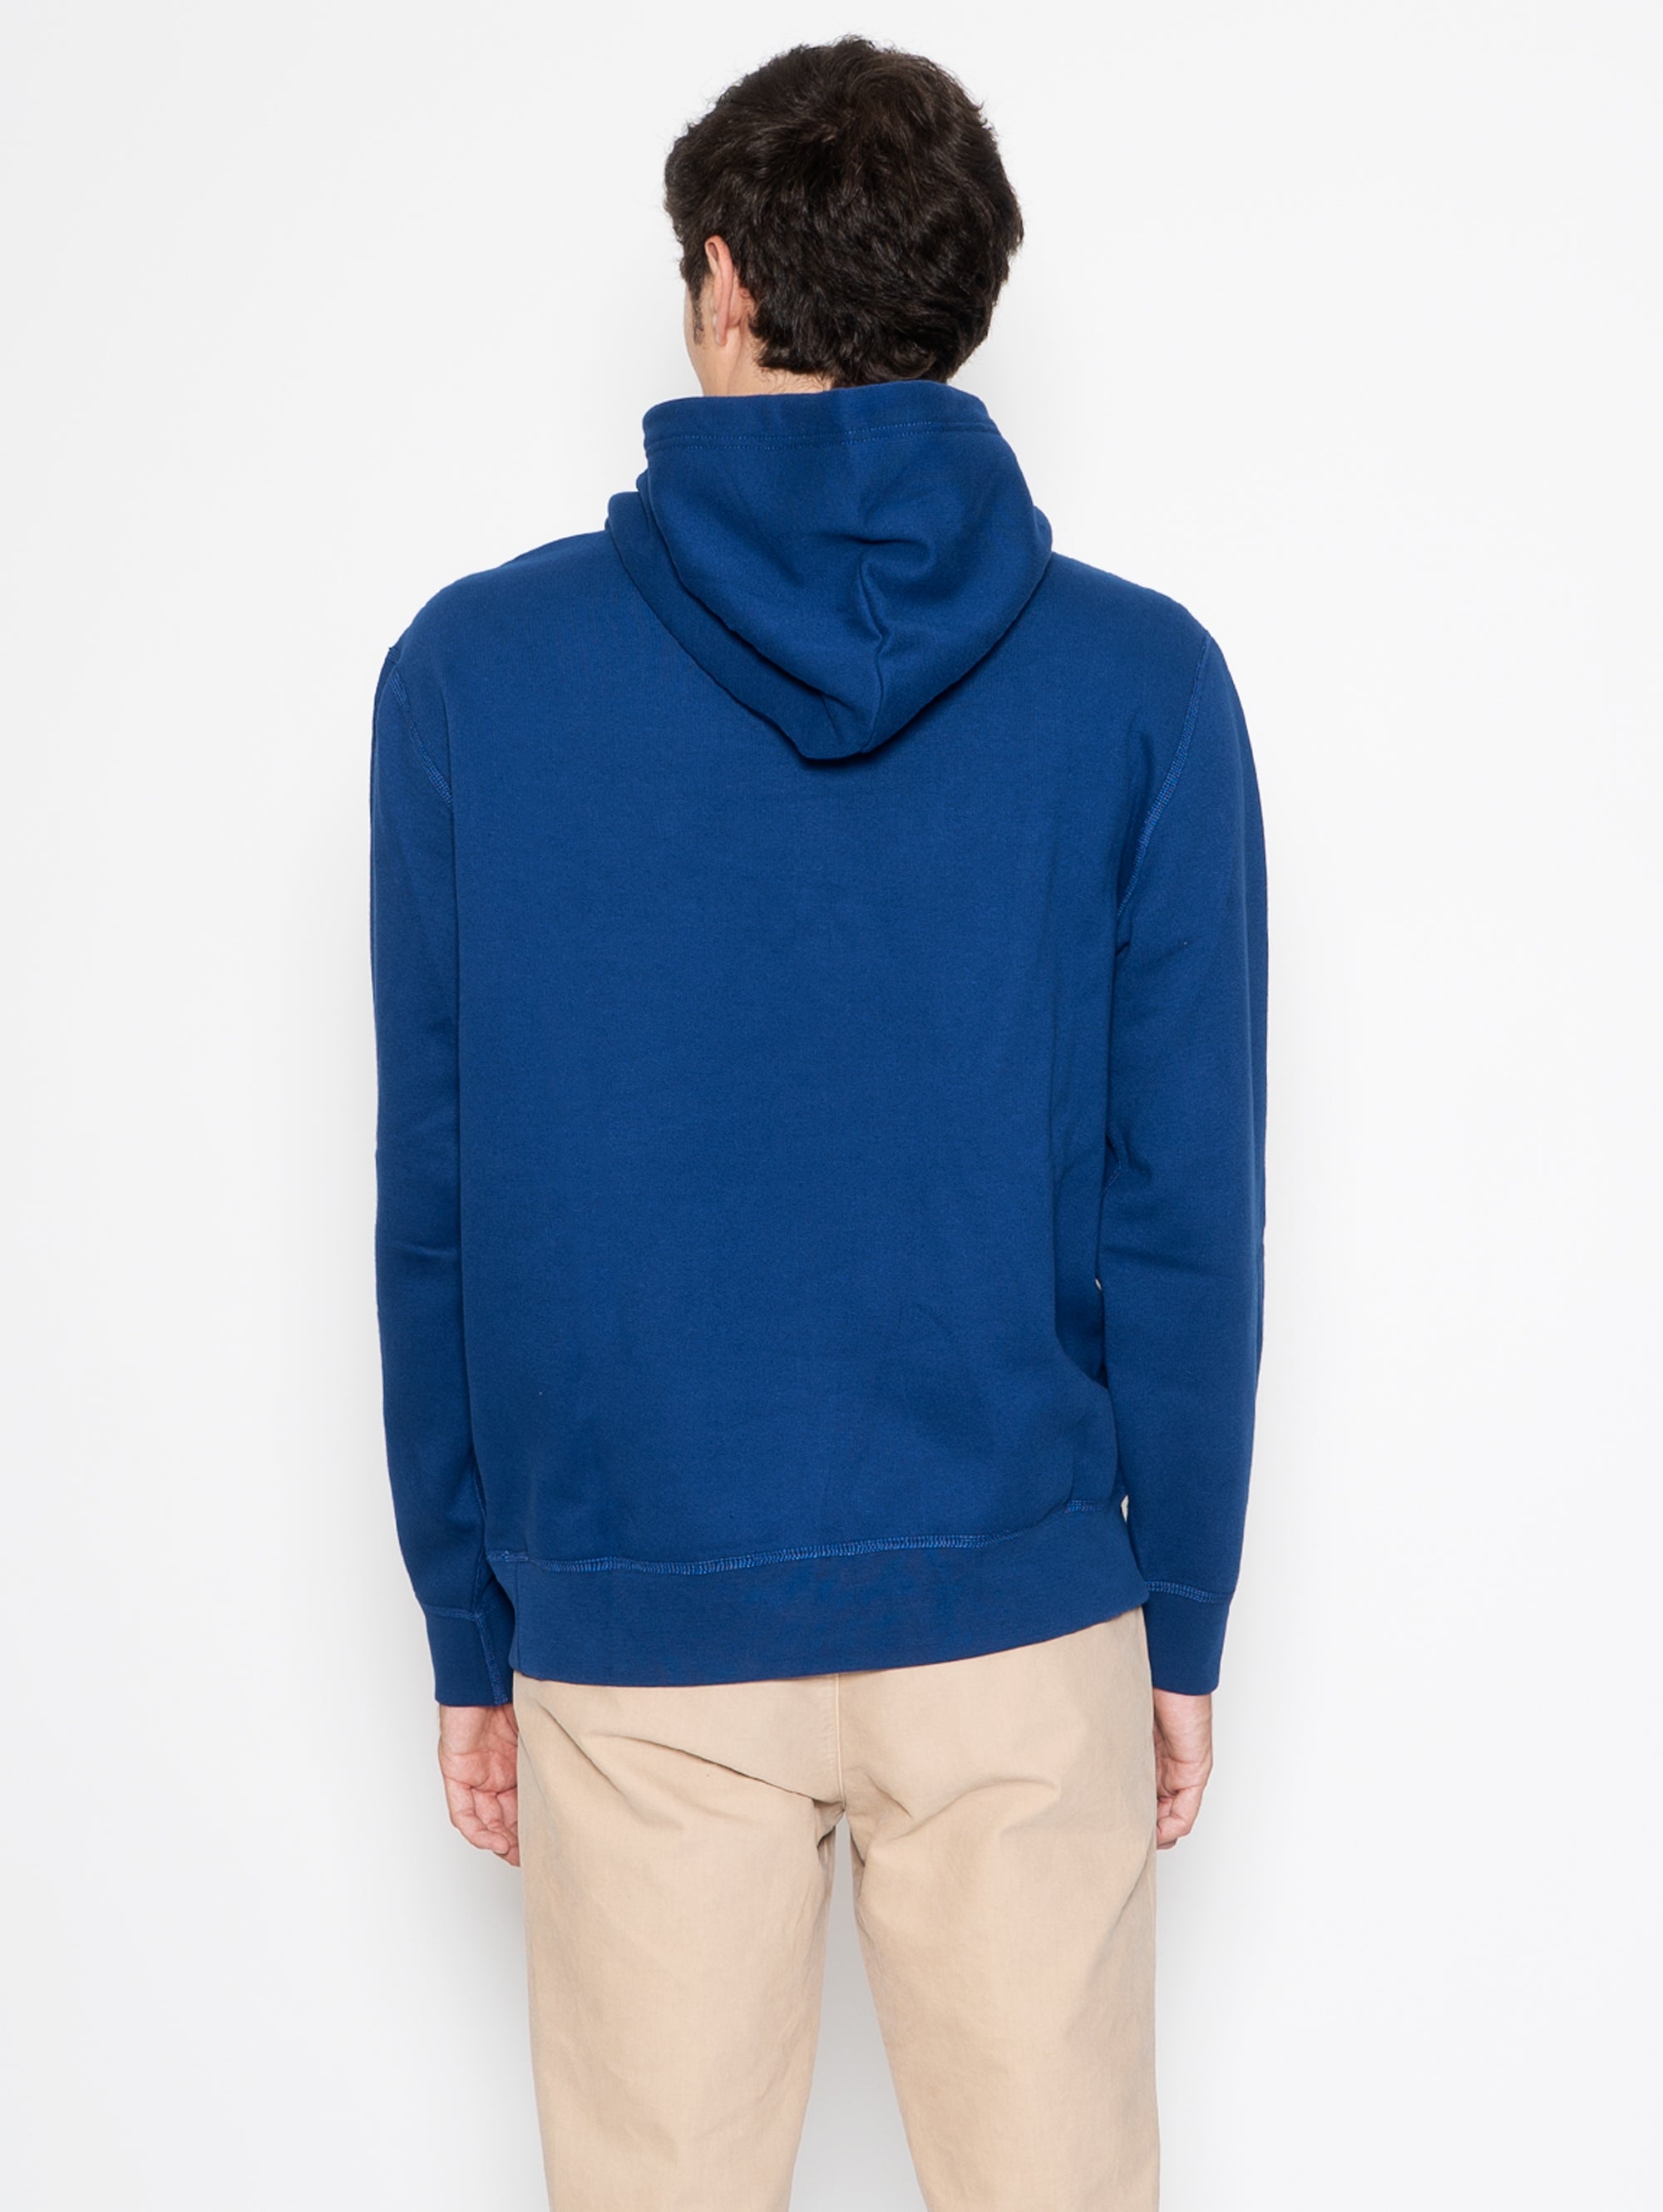 Blaues Kapuzen-Sweatshirt